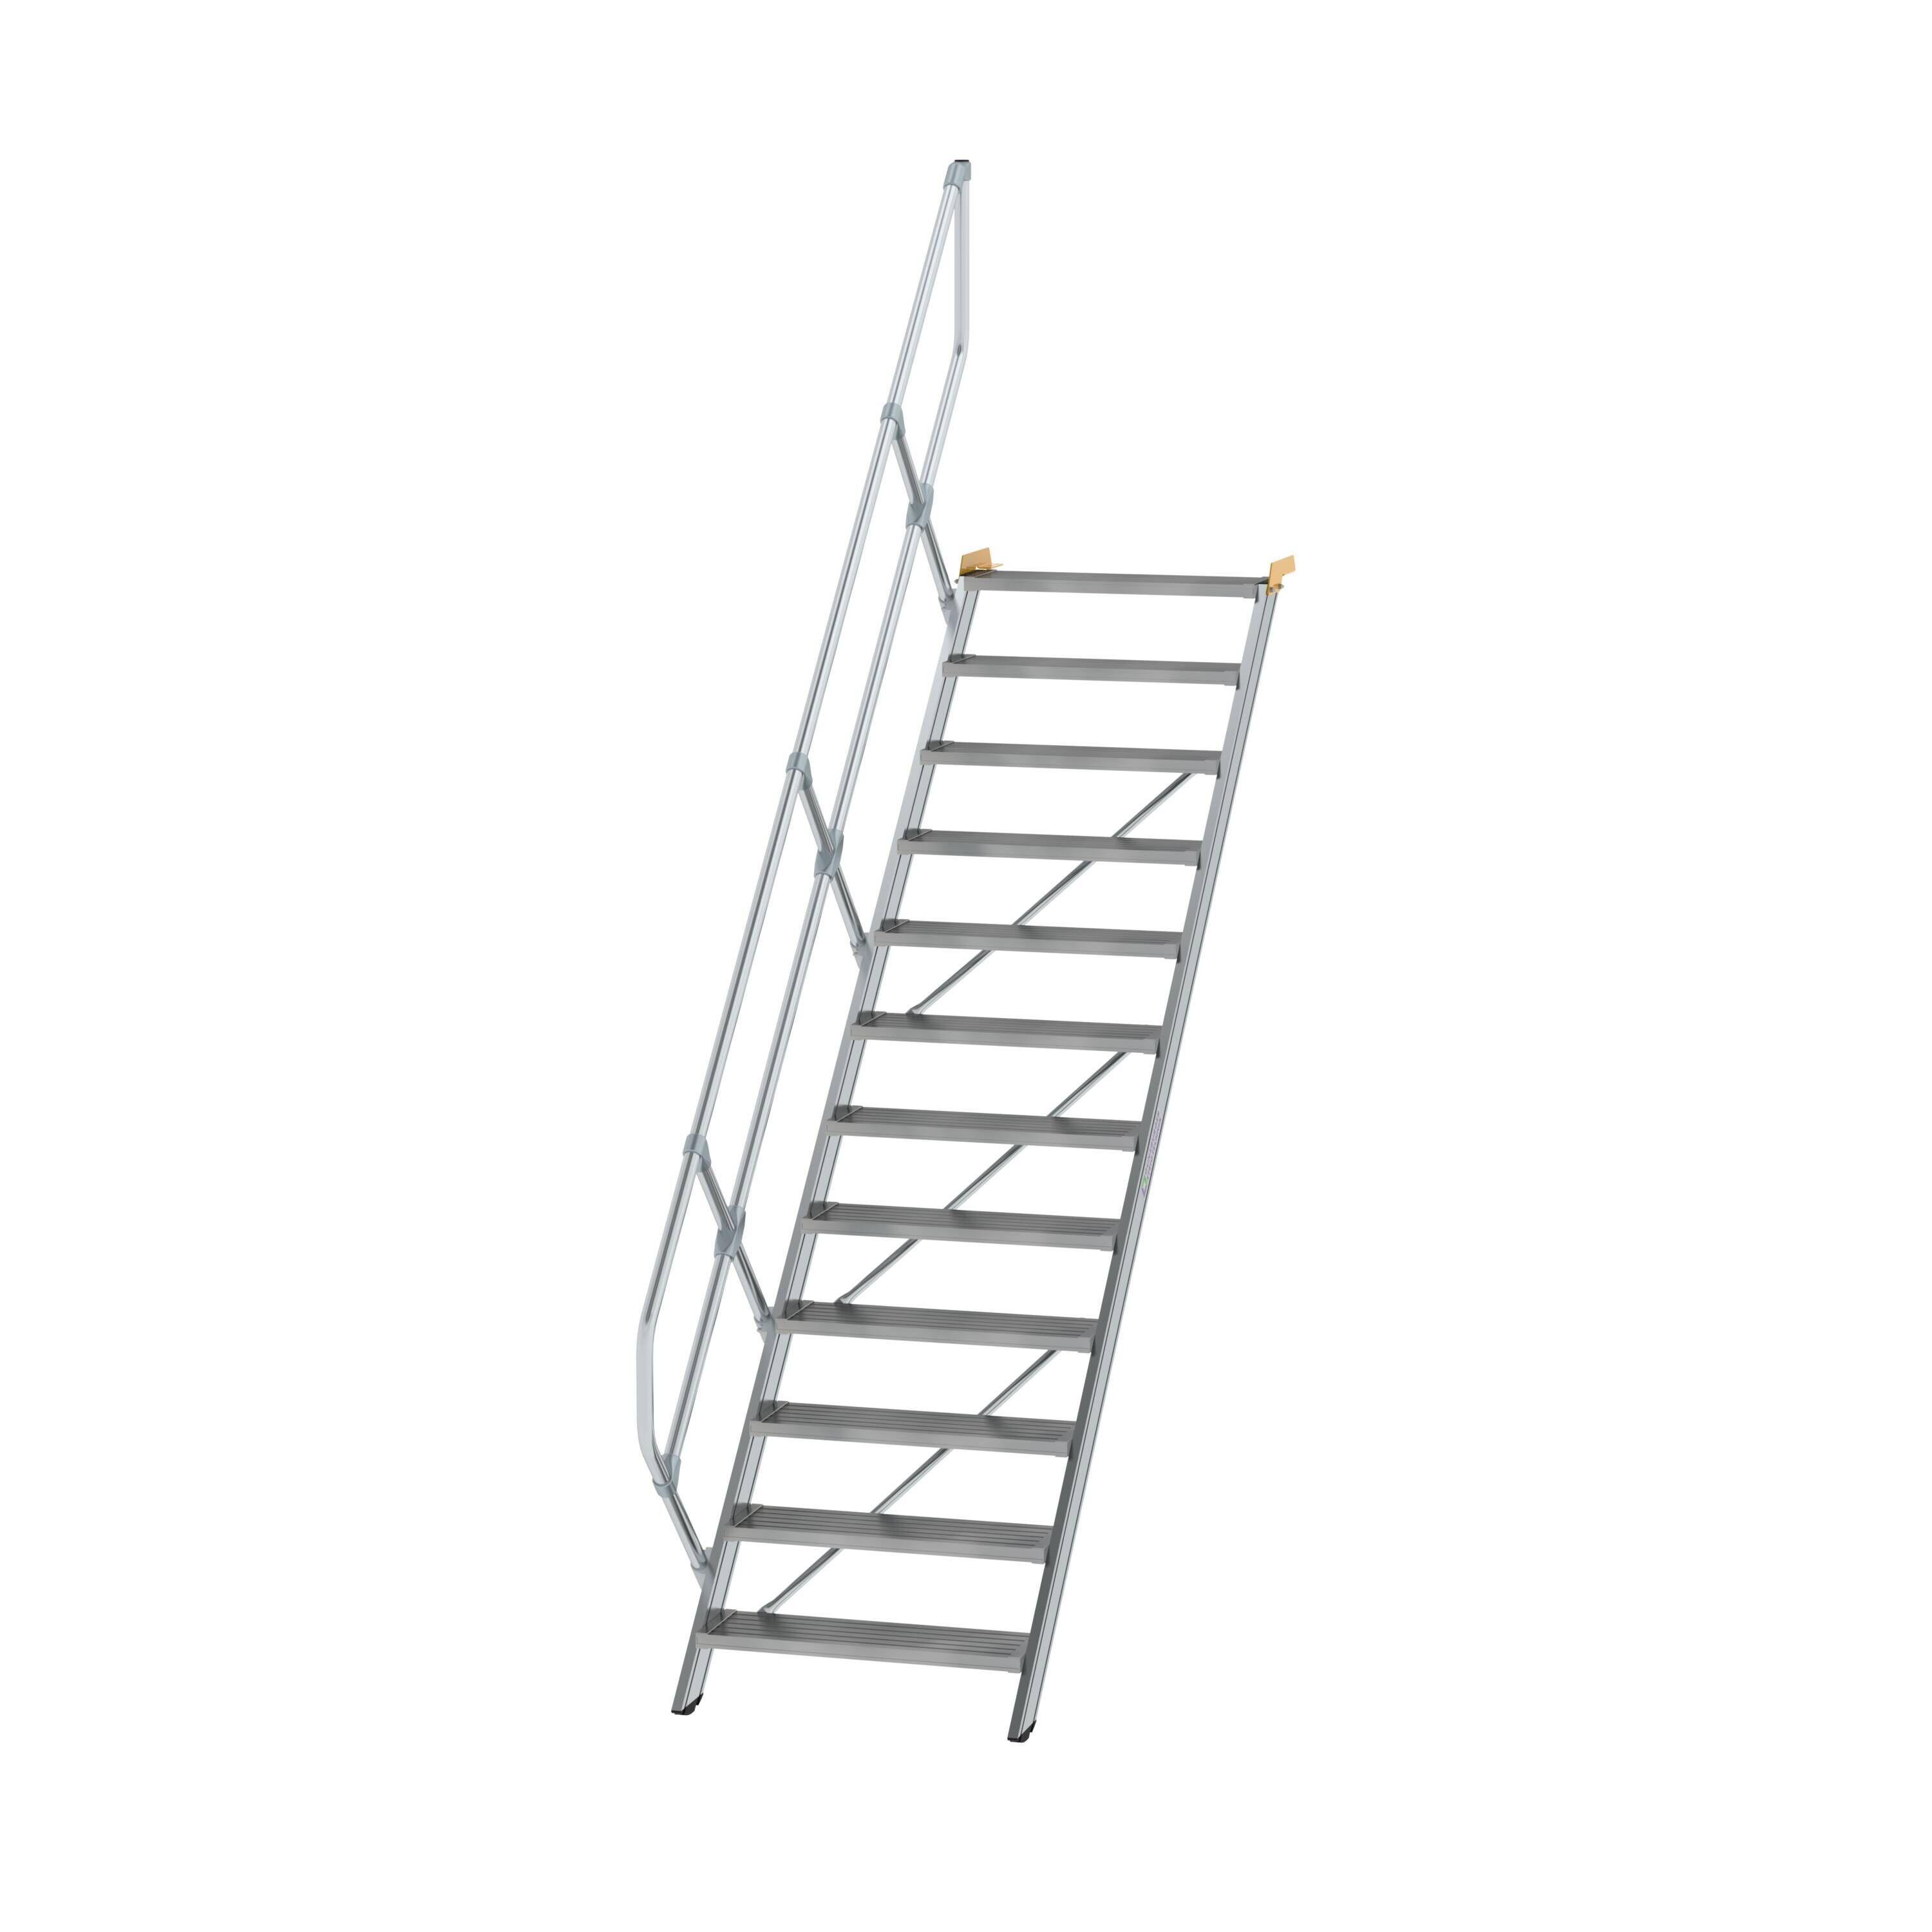 Treppe 45° Stufenbreite 800 mm 12 Stufen Aluminium geriffelt